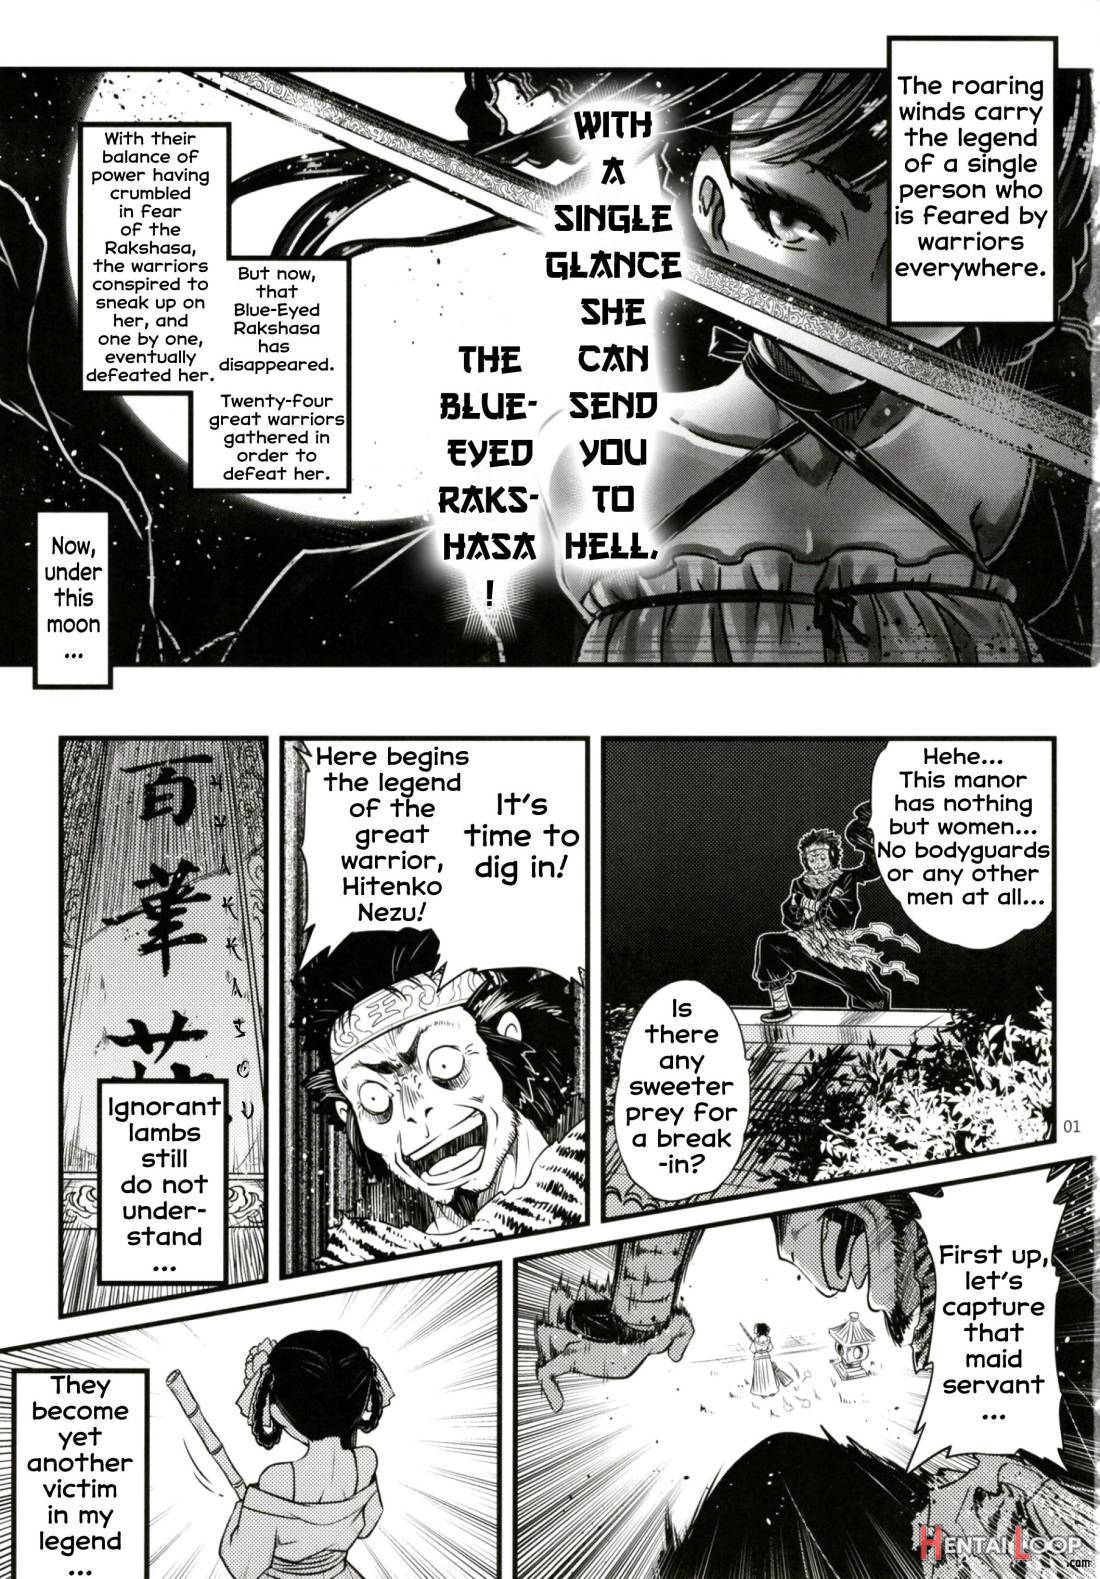 Hyakkasou2 《souzetsu! Kaidou Fujin No Densetsu》 page 2